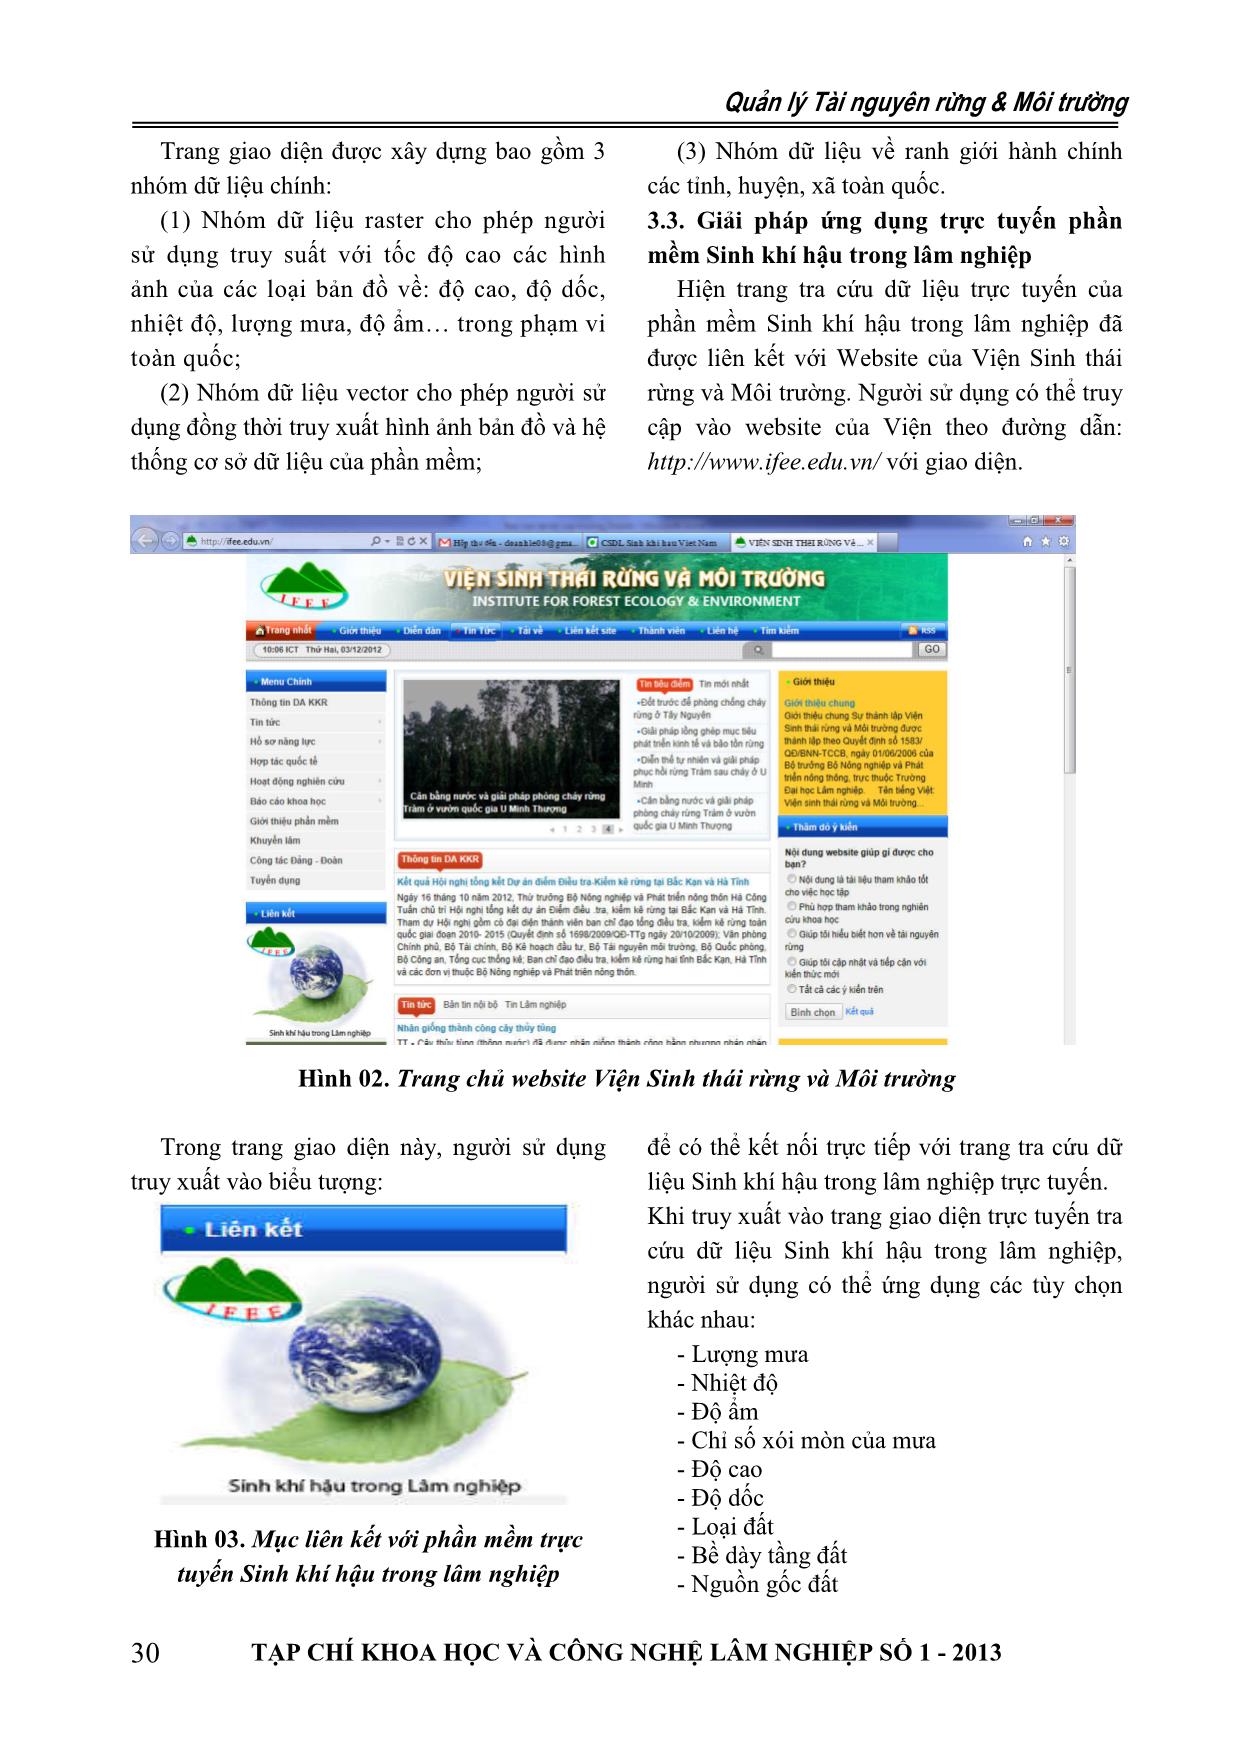 Giới thiệu phần mềm trực tuyến Sinh khí hậu trong lâm nghiệp trang 3